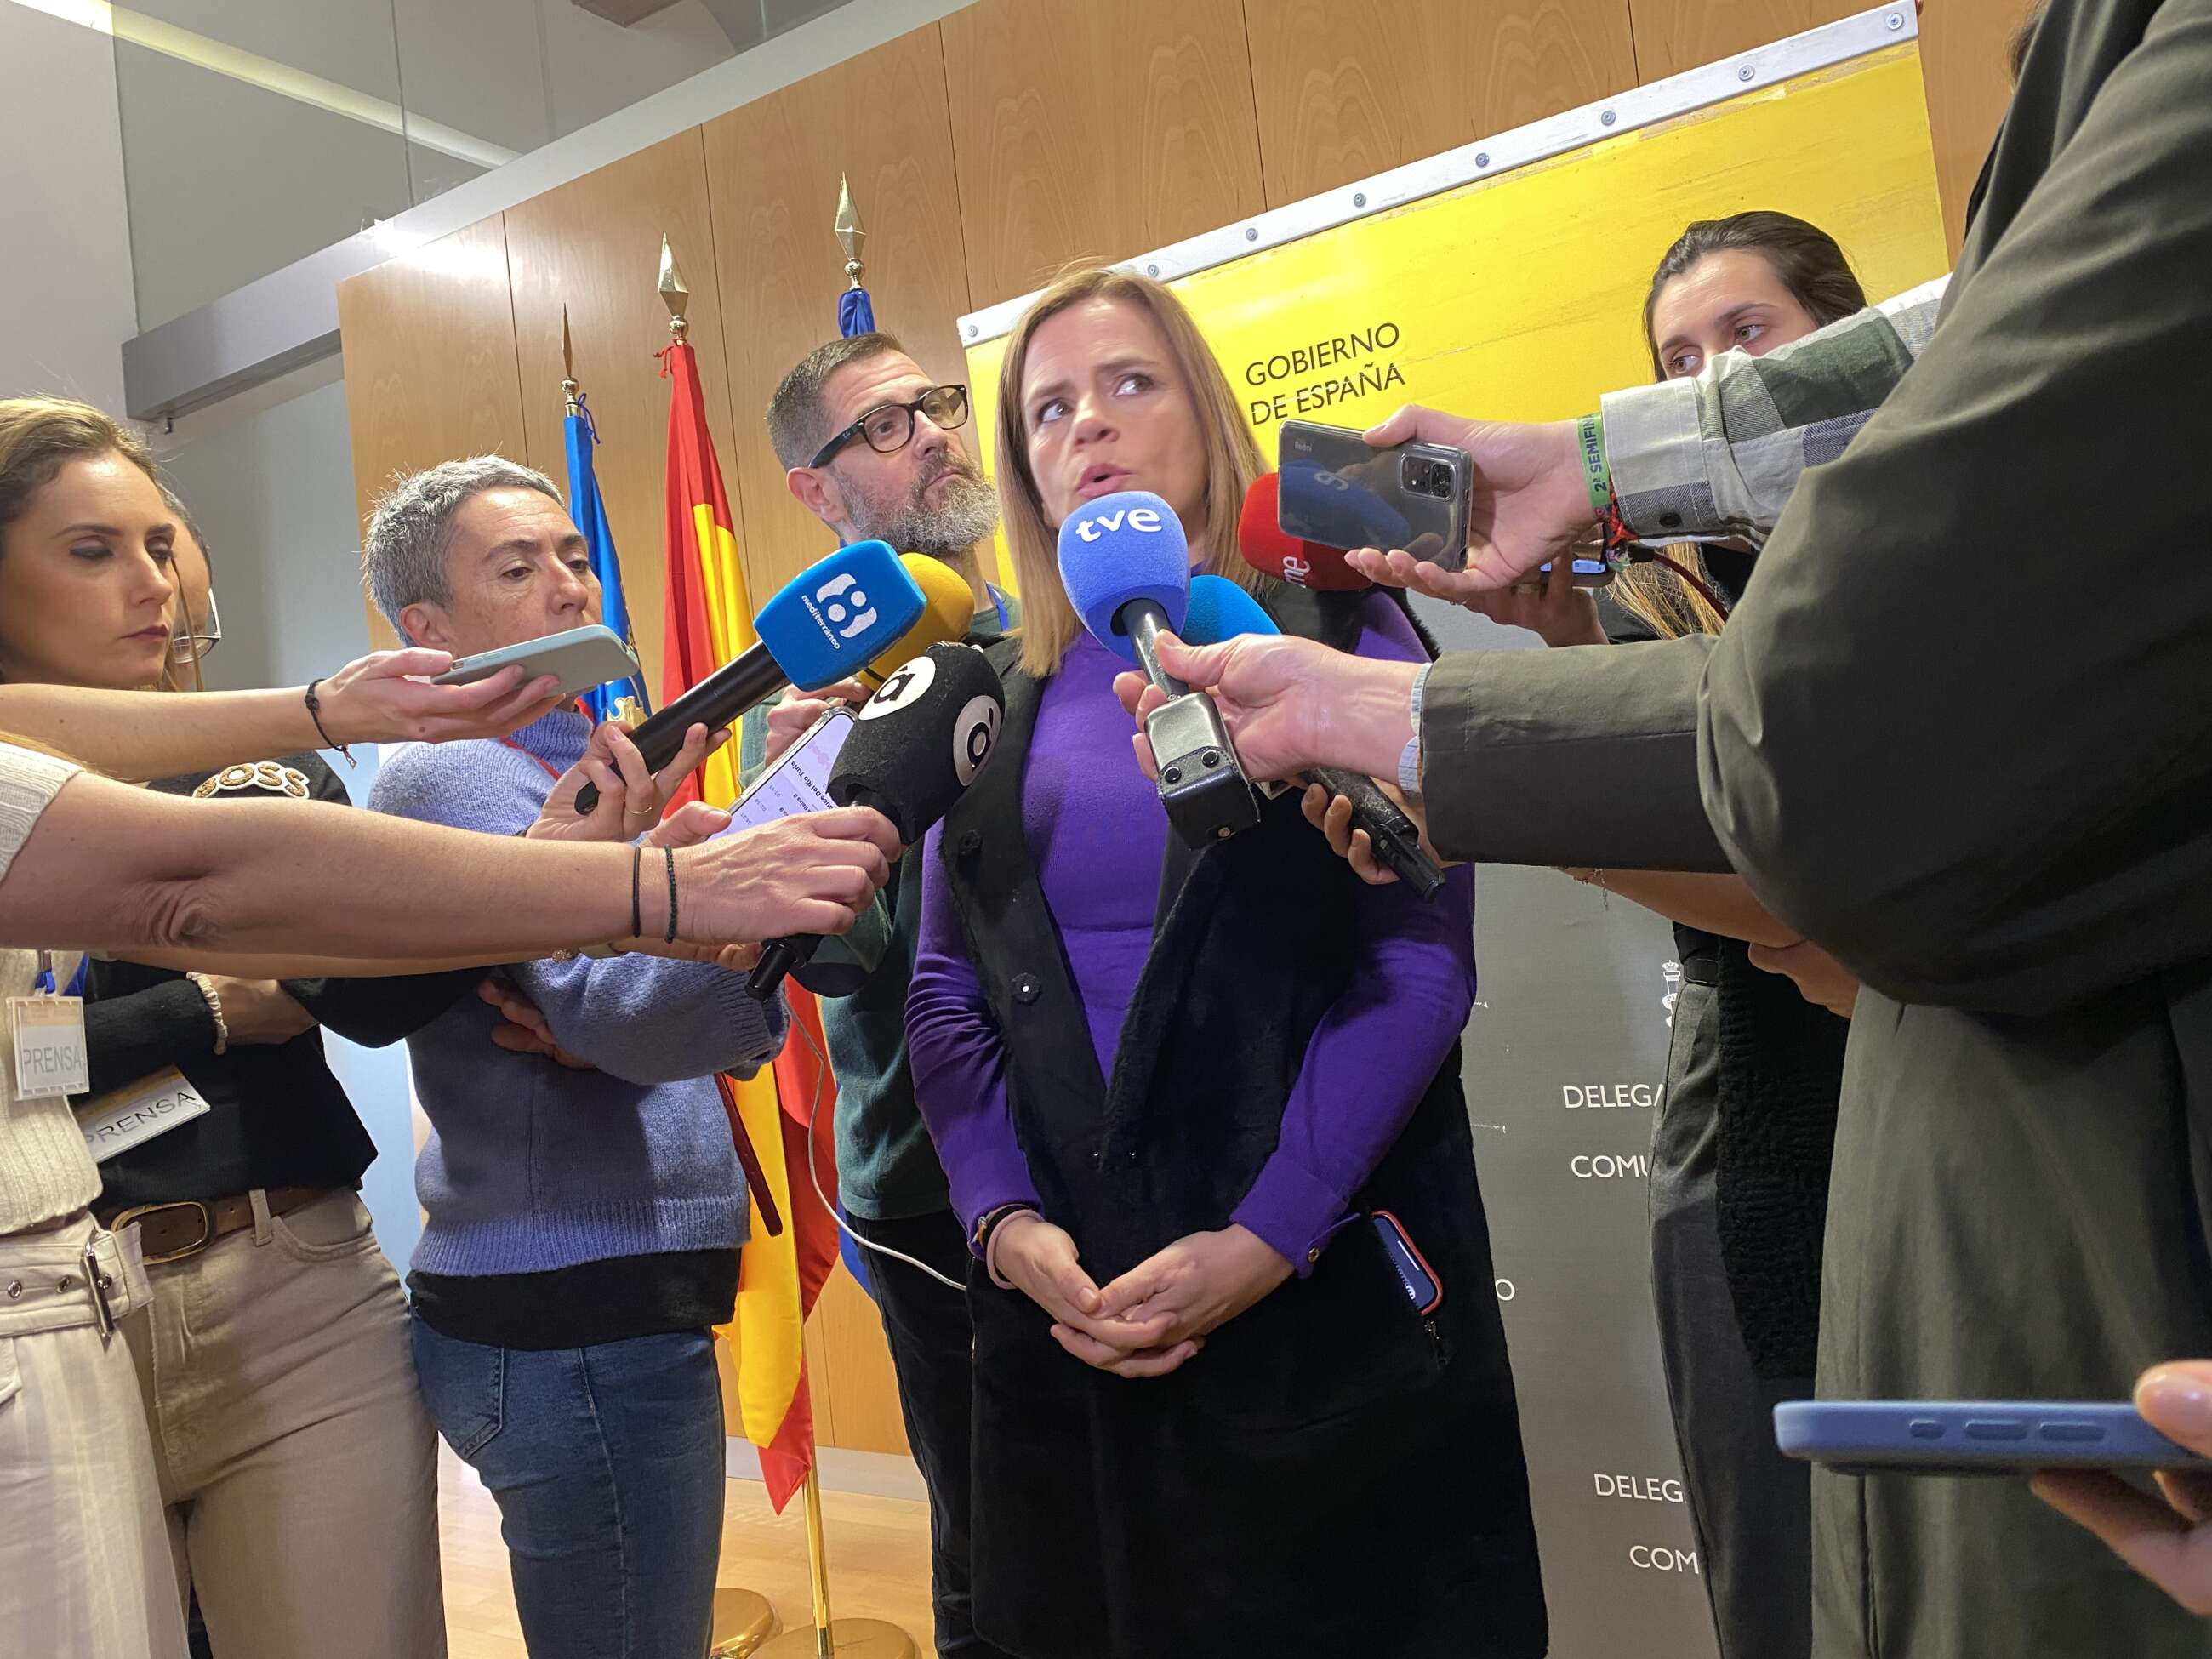 La delegada del Gobierno en la Comunitat Valenciana, Pilar Bernabé, atiende a los medios de comunicación. Foto: EFE.